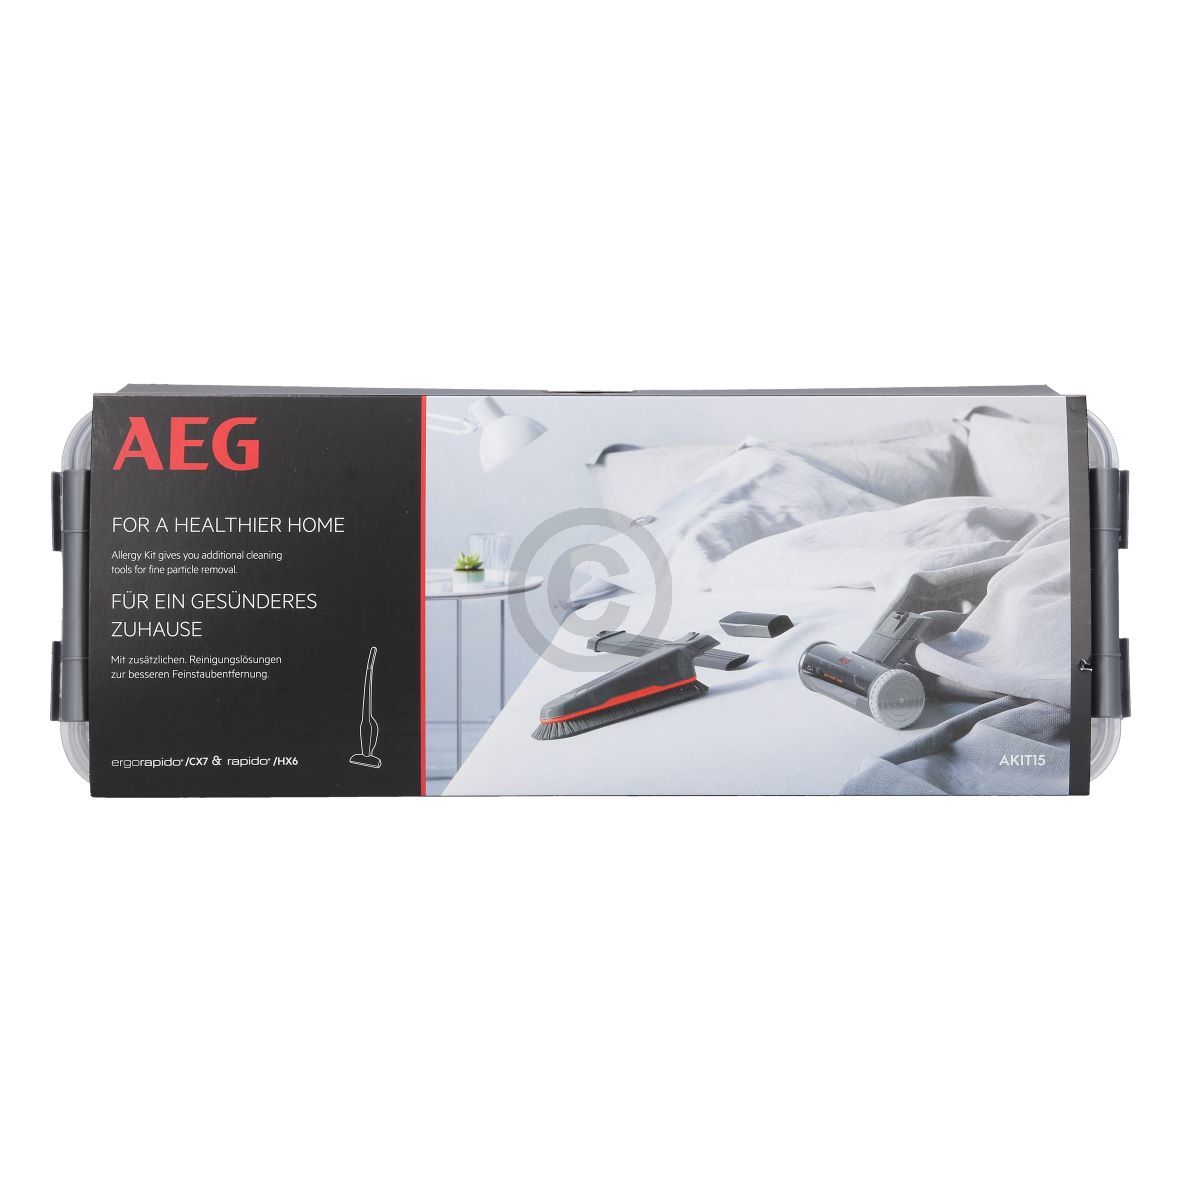 ALLERGY KIT Düsen AEG 900168920/8 AKIT15 für Stielstaubsauger (EA-9001689208)